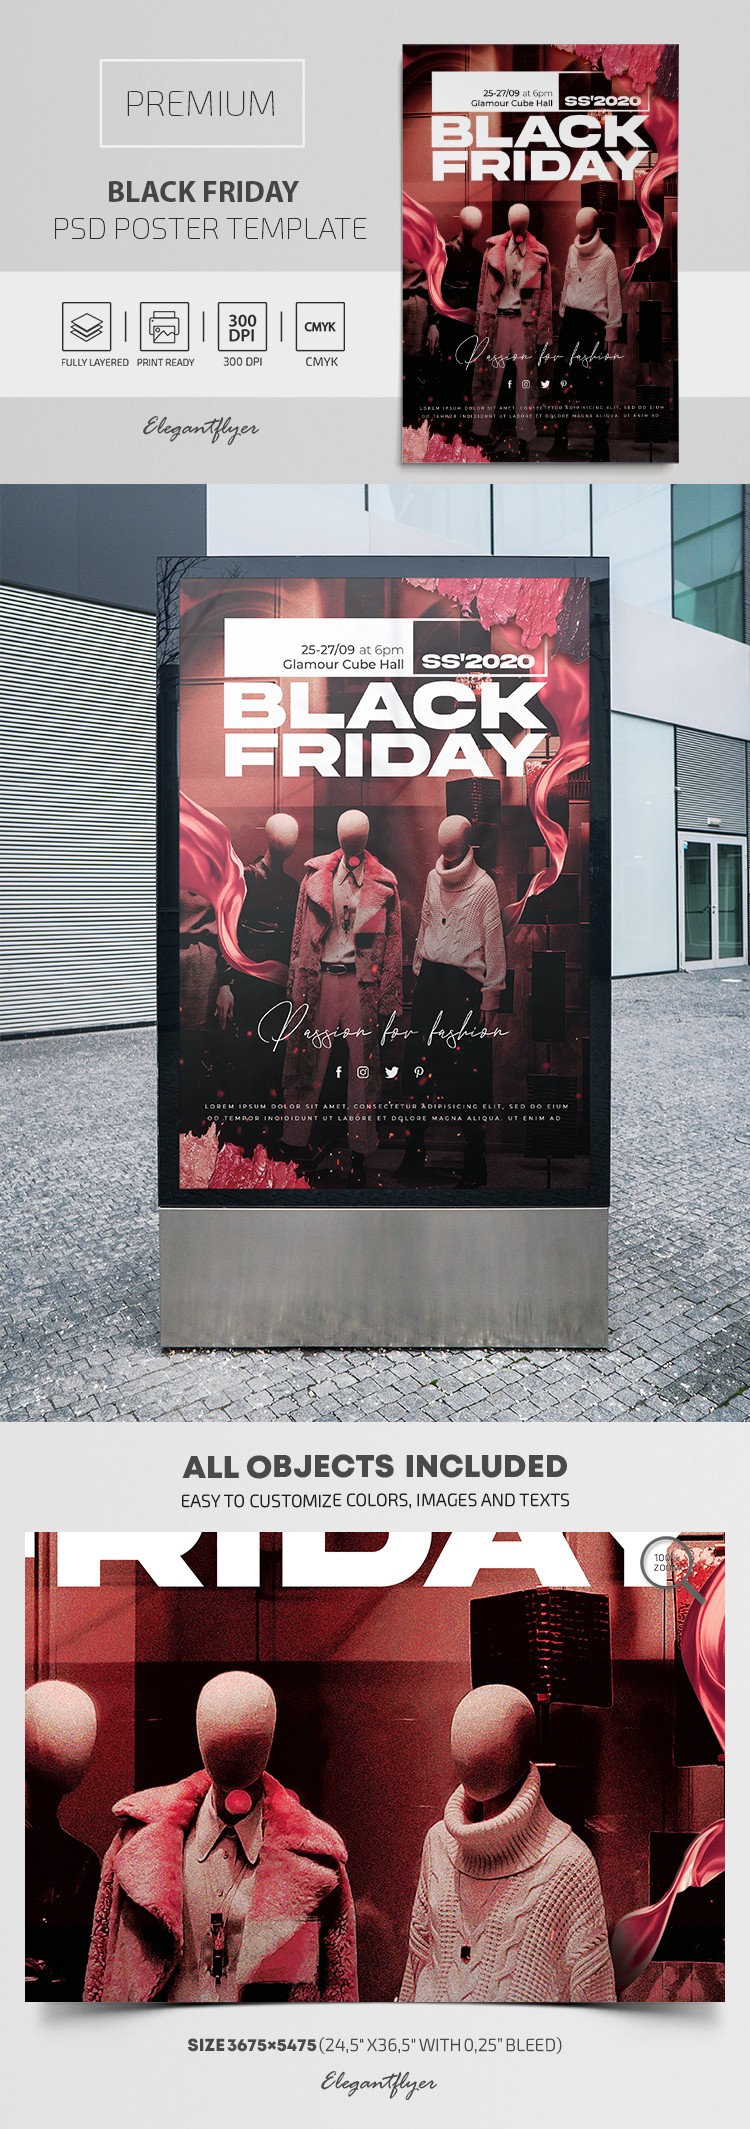 Black Friday-Plakat by ElegantFlyer